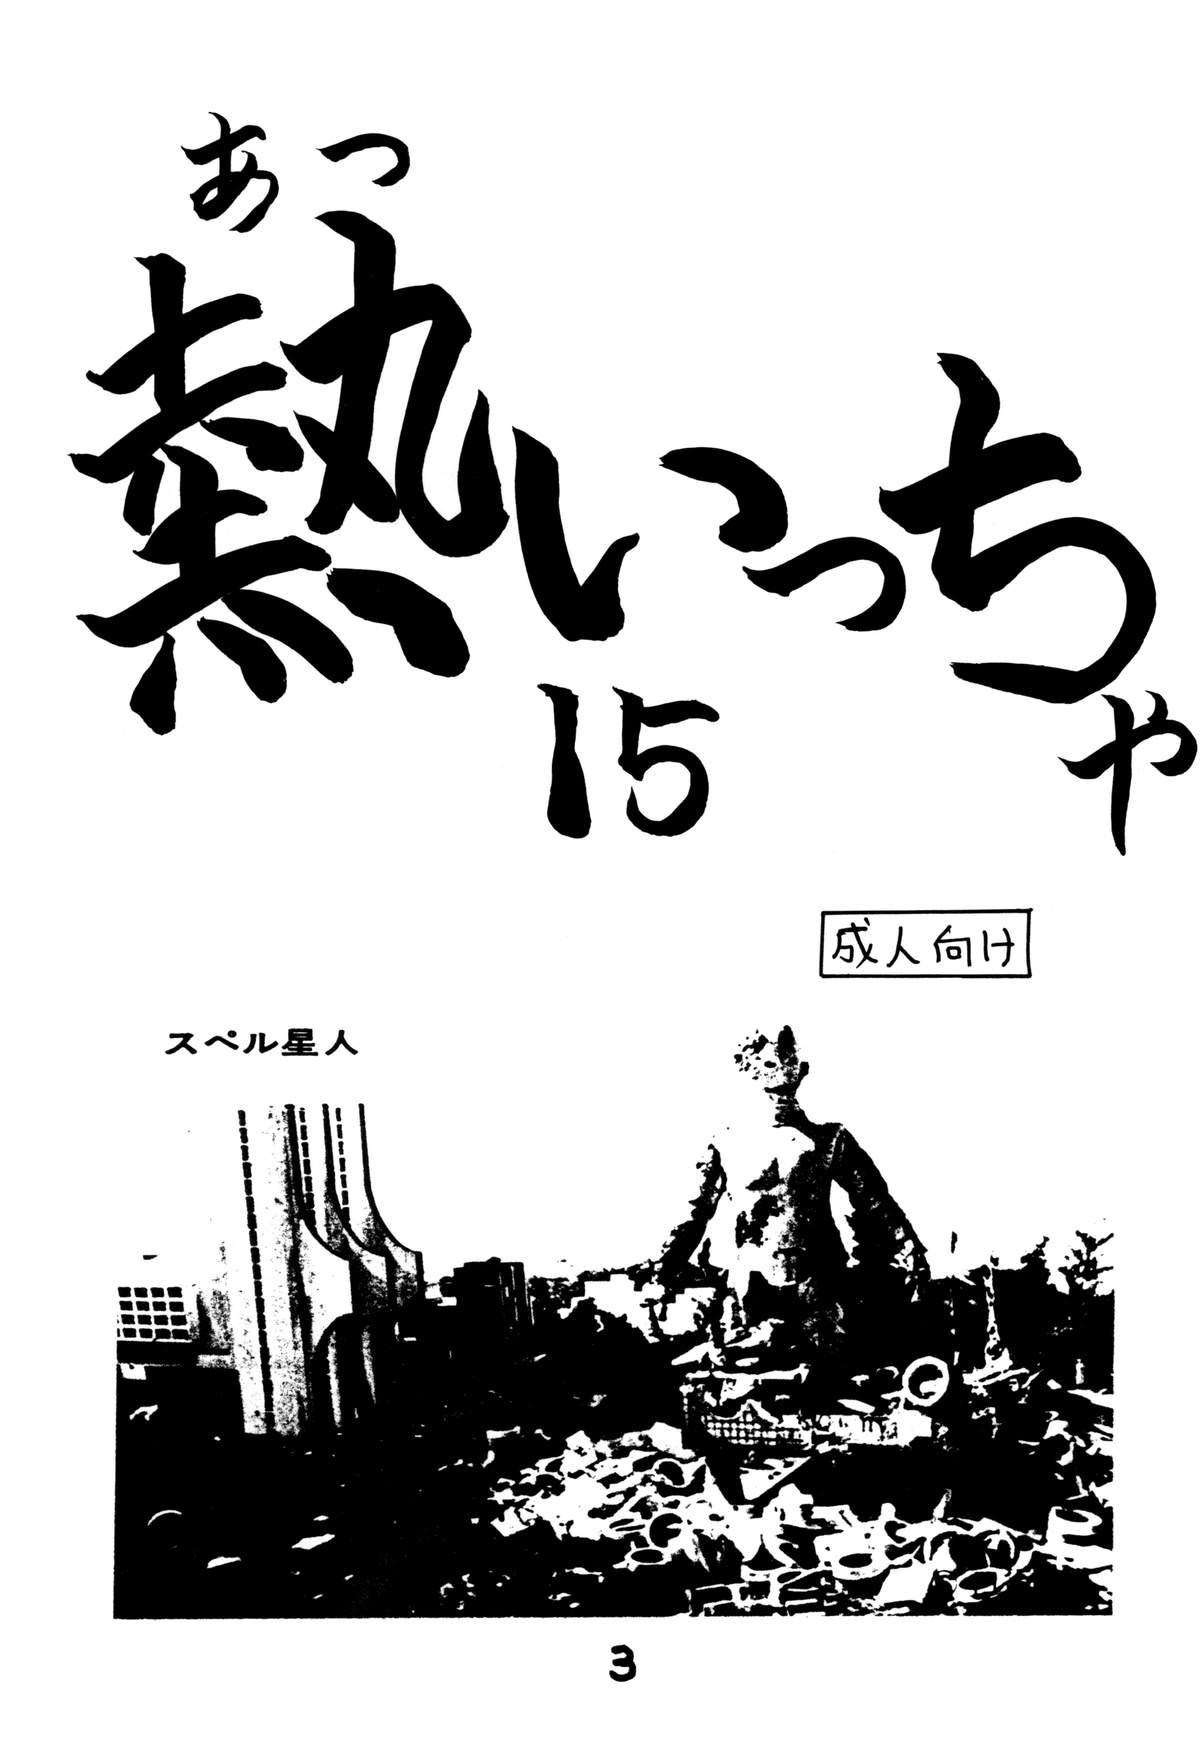 Atsui-cha 15 1